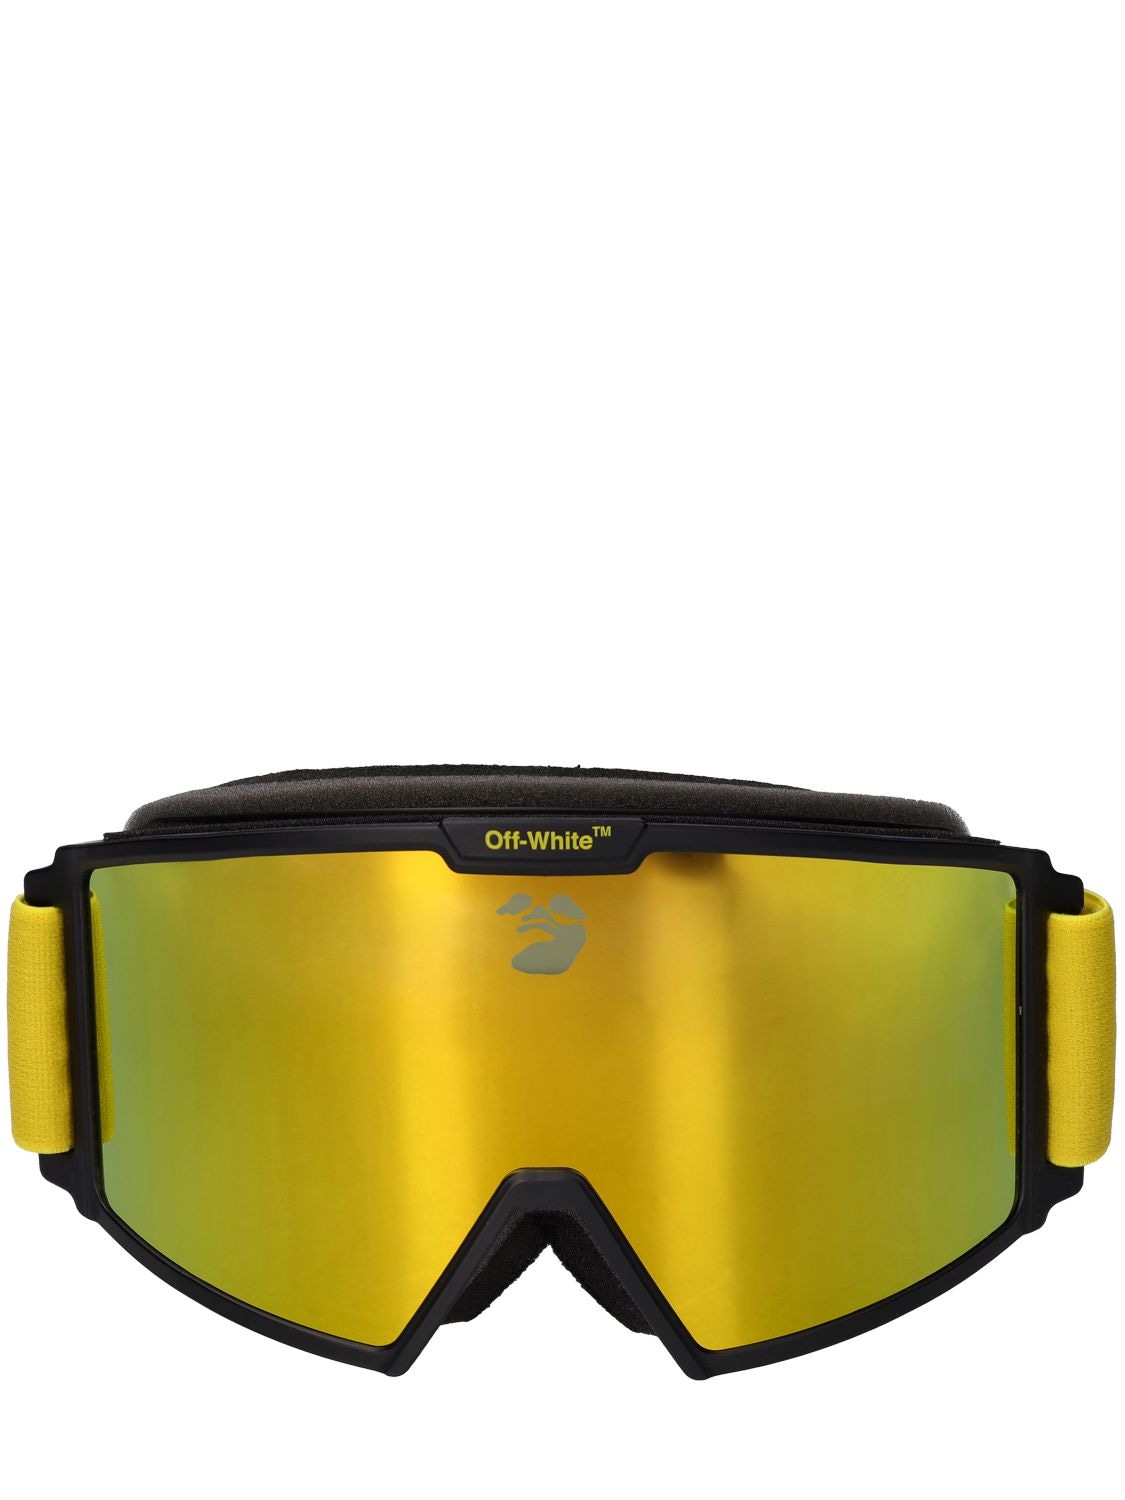 Off-white Ski Goggles - OFF-WHITE - Modalova